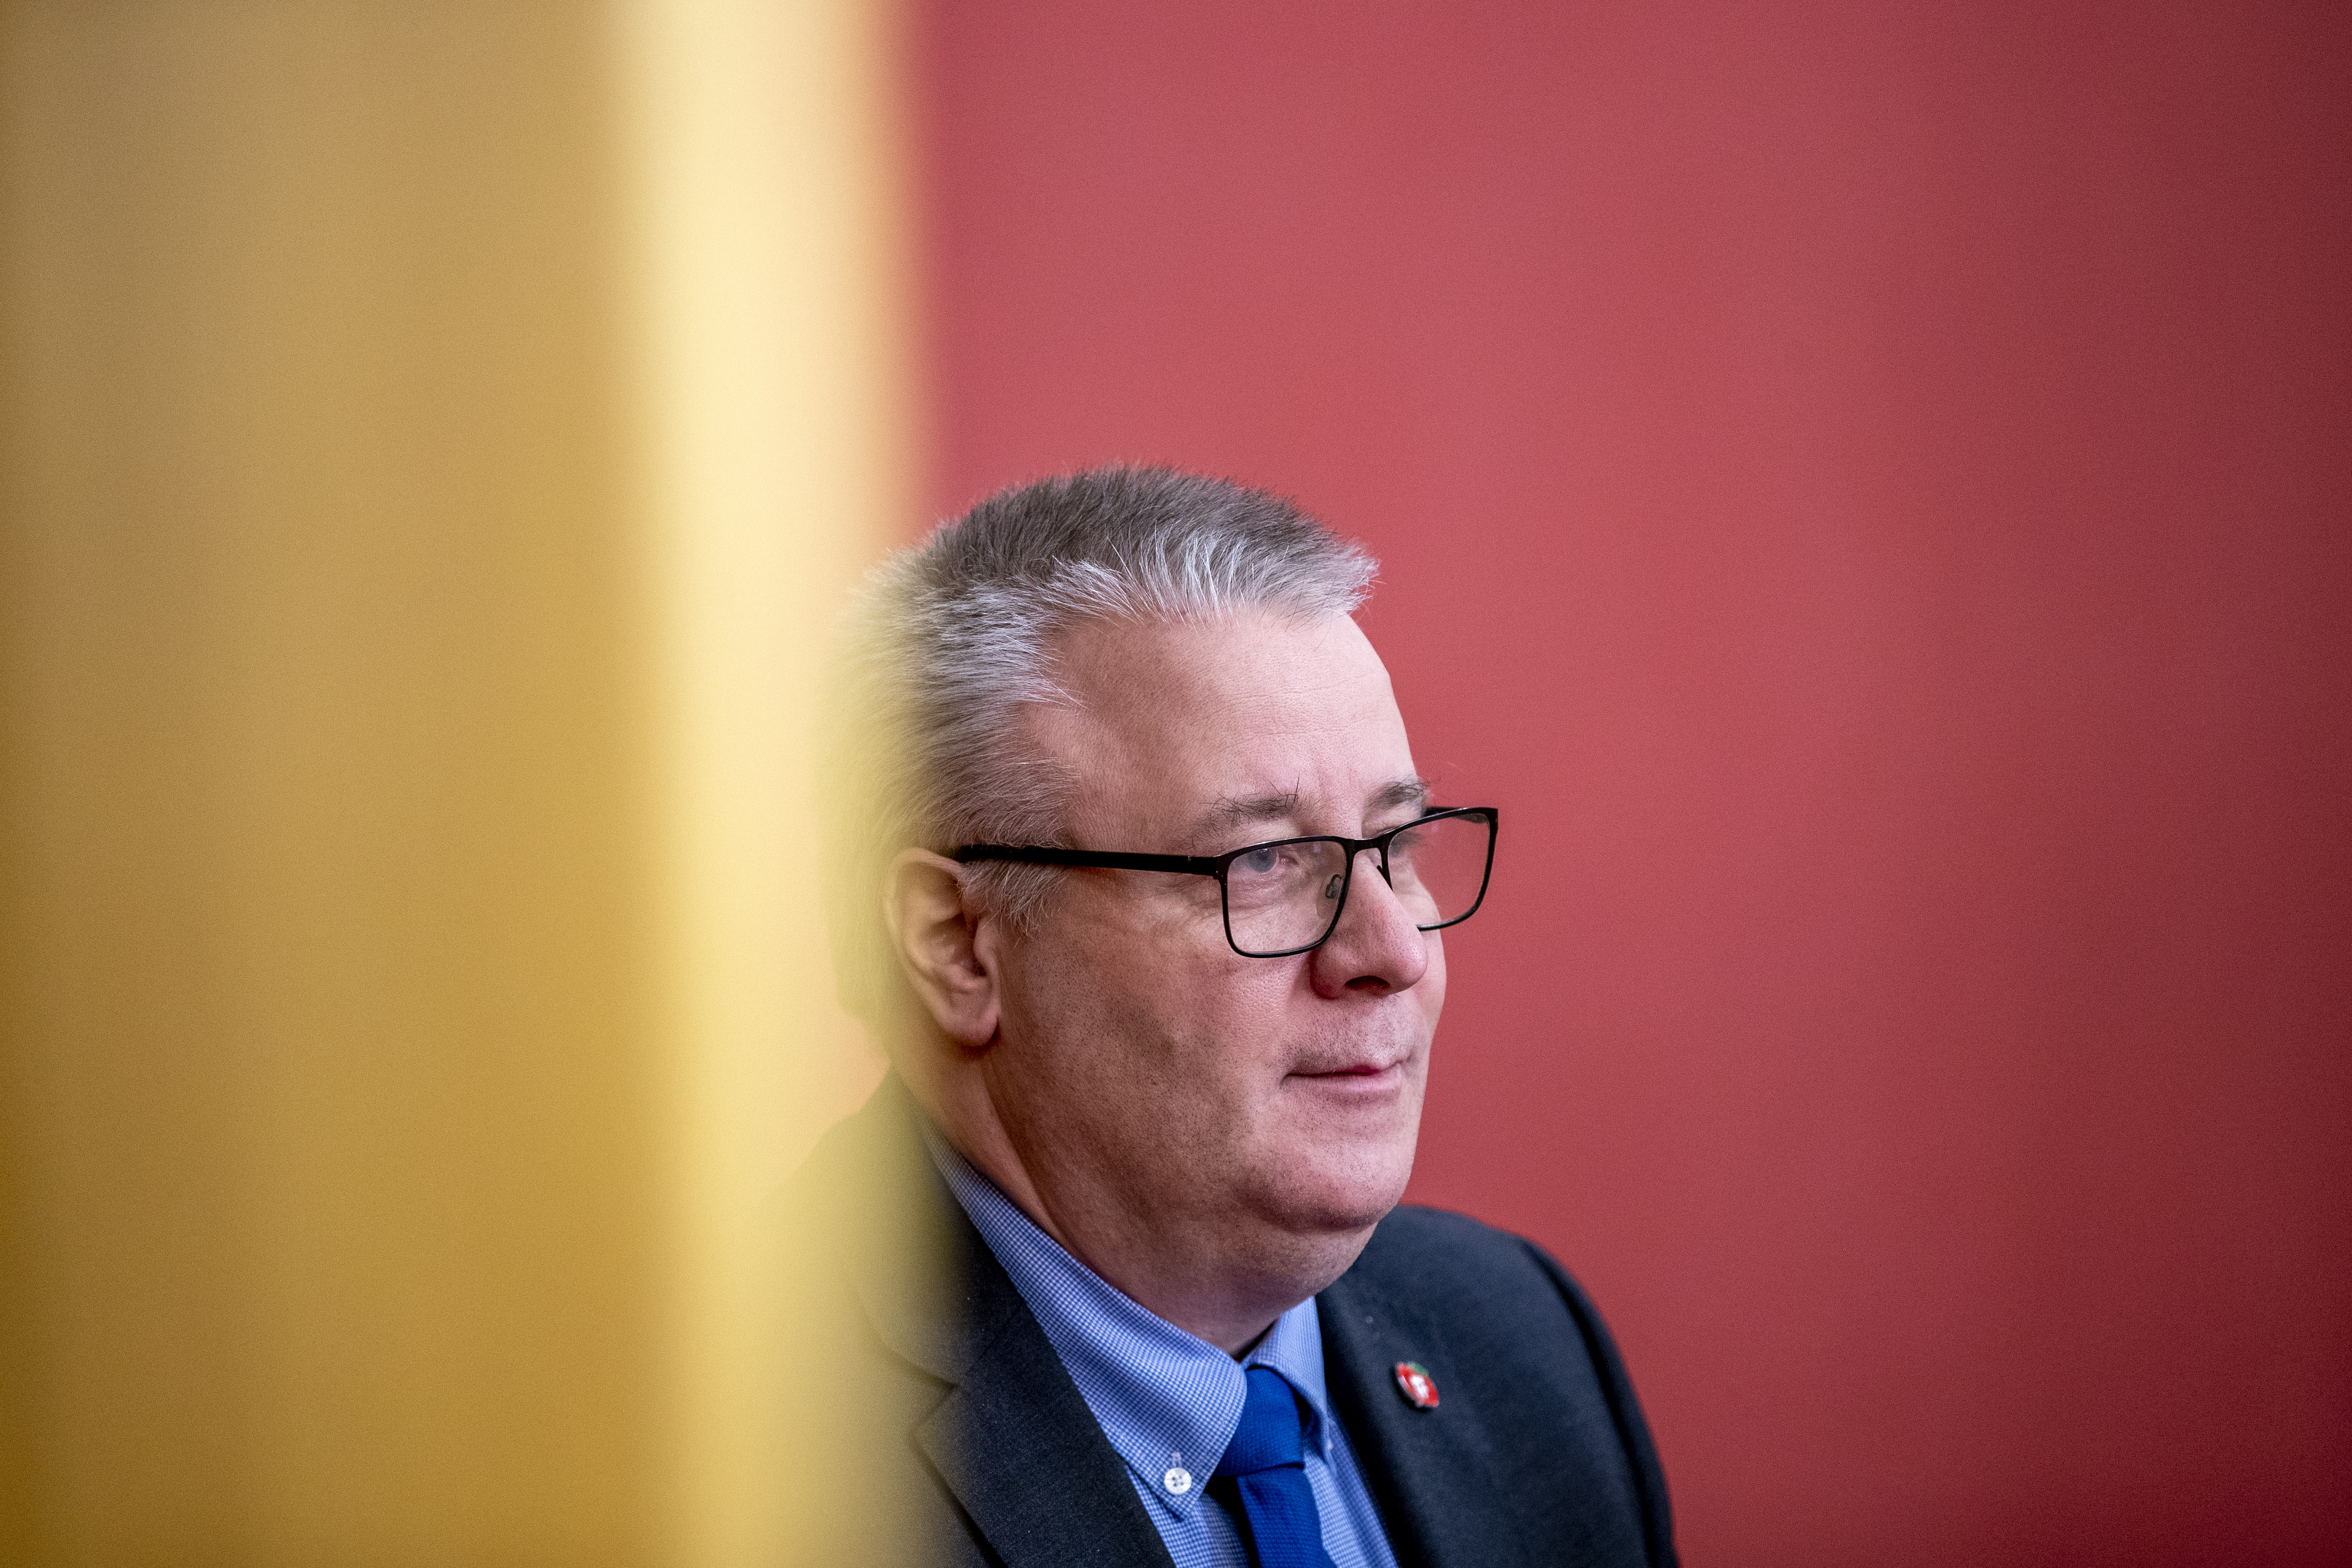 Oslo 20220106. 
Bård Hoksrud (Frp) i Stortinget under debatten om skjenkestopp.
Foto: Javad Parsa / NTB